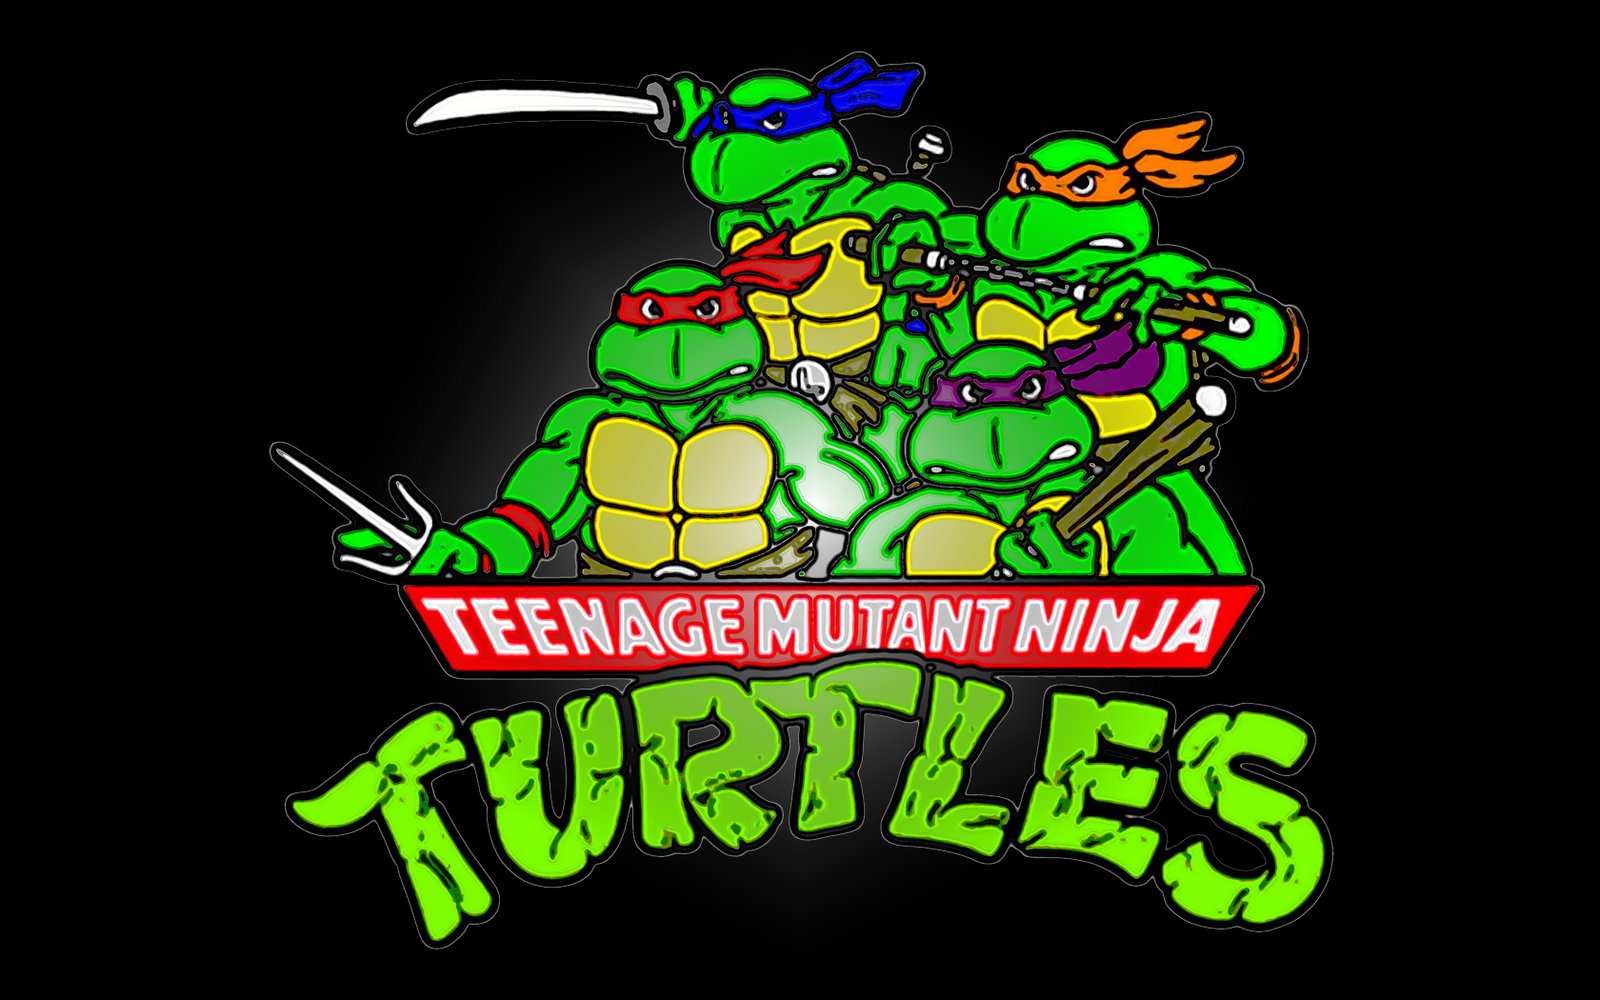 Teenage Mutant Ninja Turtles Wallpaper. Ninja Turtles Wallpaper iPods, Ninja Turtles Wallpaper and Ninja Turtles Mask Wallpaper